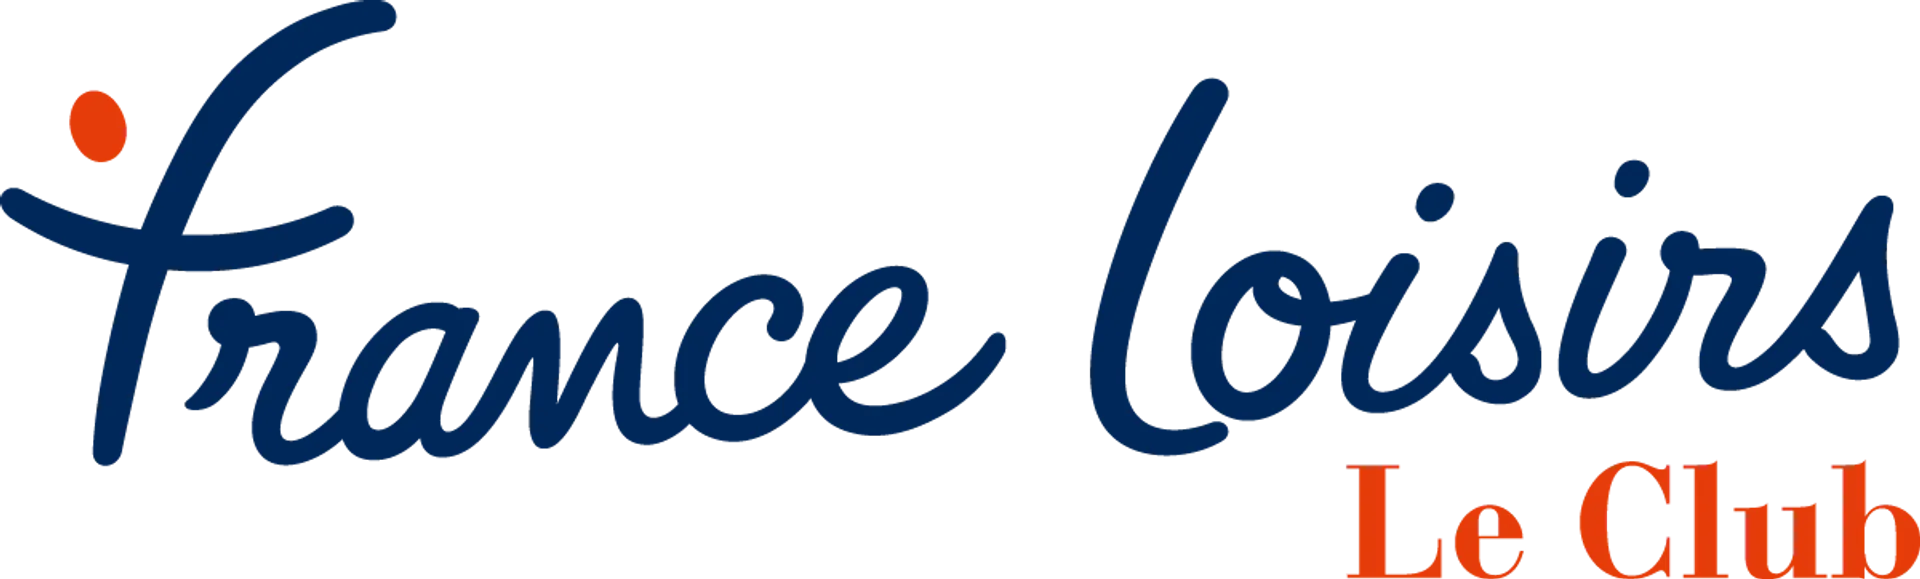 FRANCE LOISIRS logo